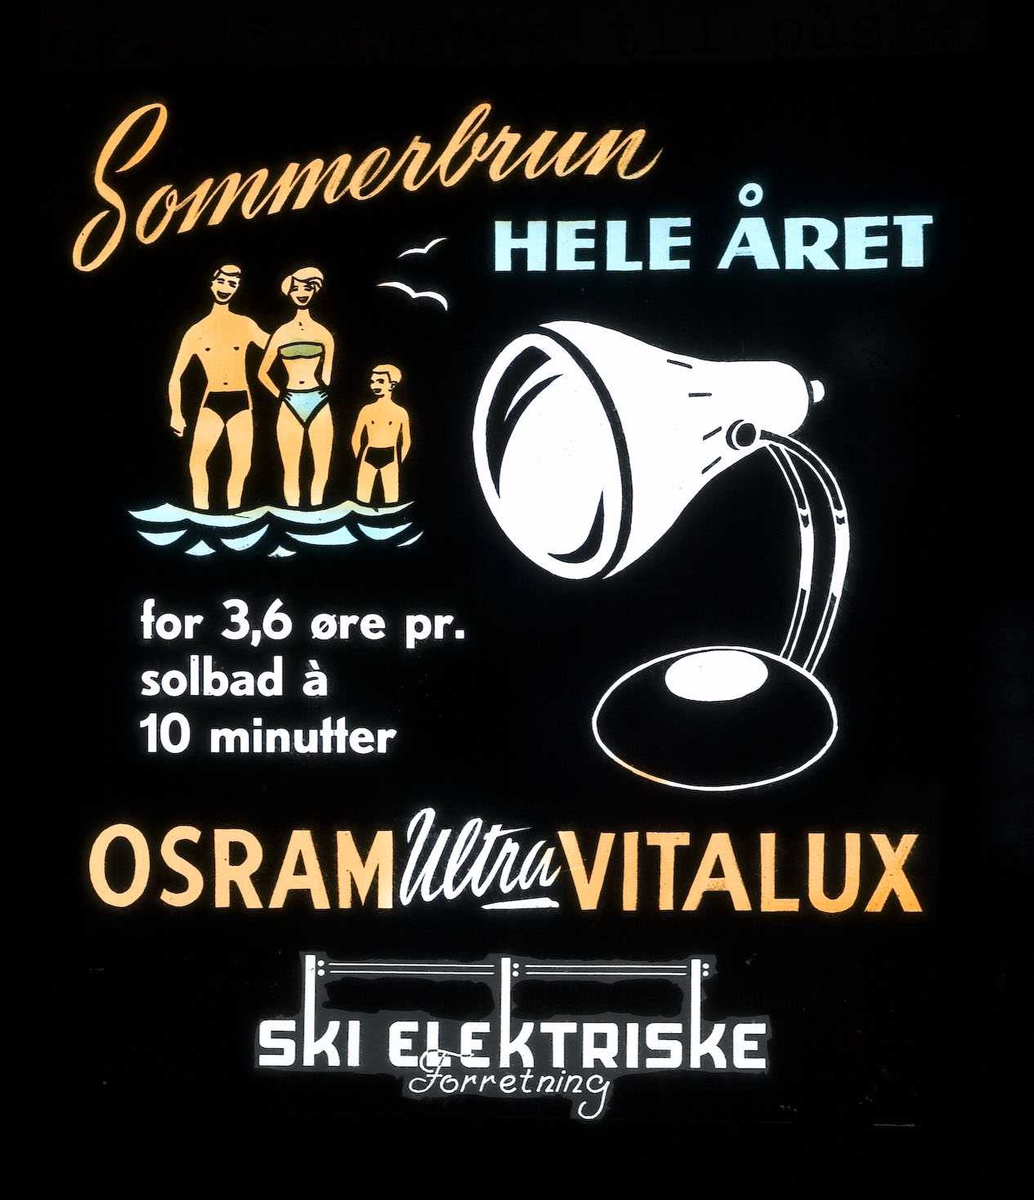 Kinoreklame fra Ski for høyfjellsol. Sommerbrun hele året for 3,6 øre pr. solbad a 10 minutter. Osram Ultra Vitalux. Ski elektriske forretning.